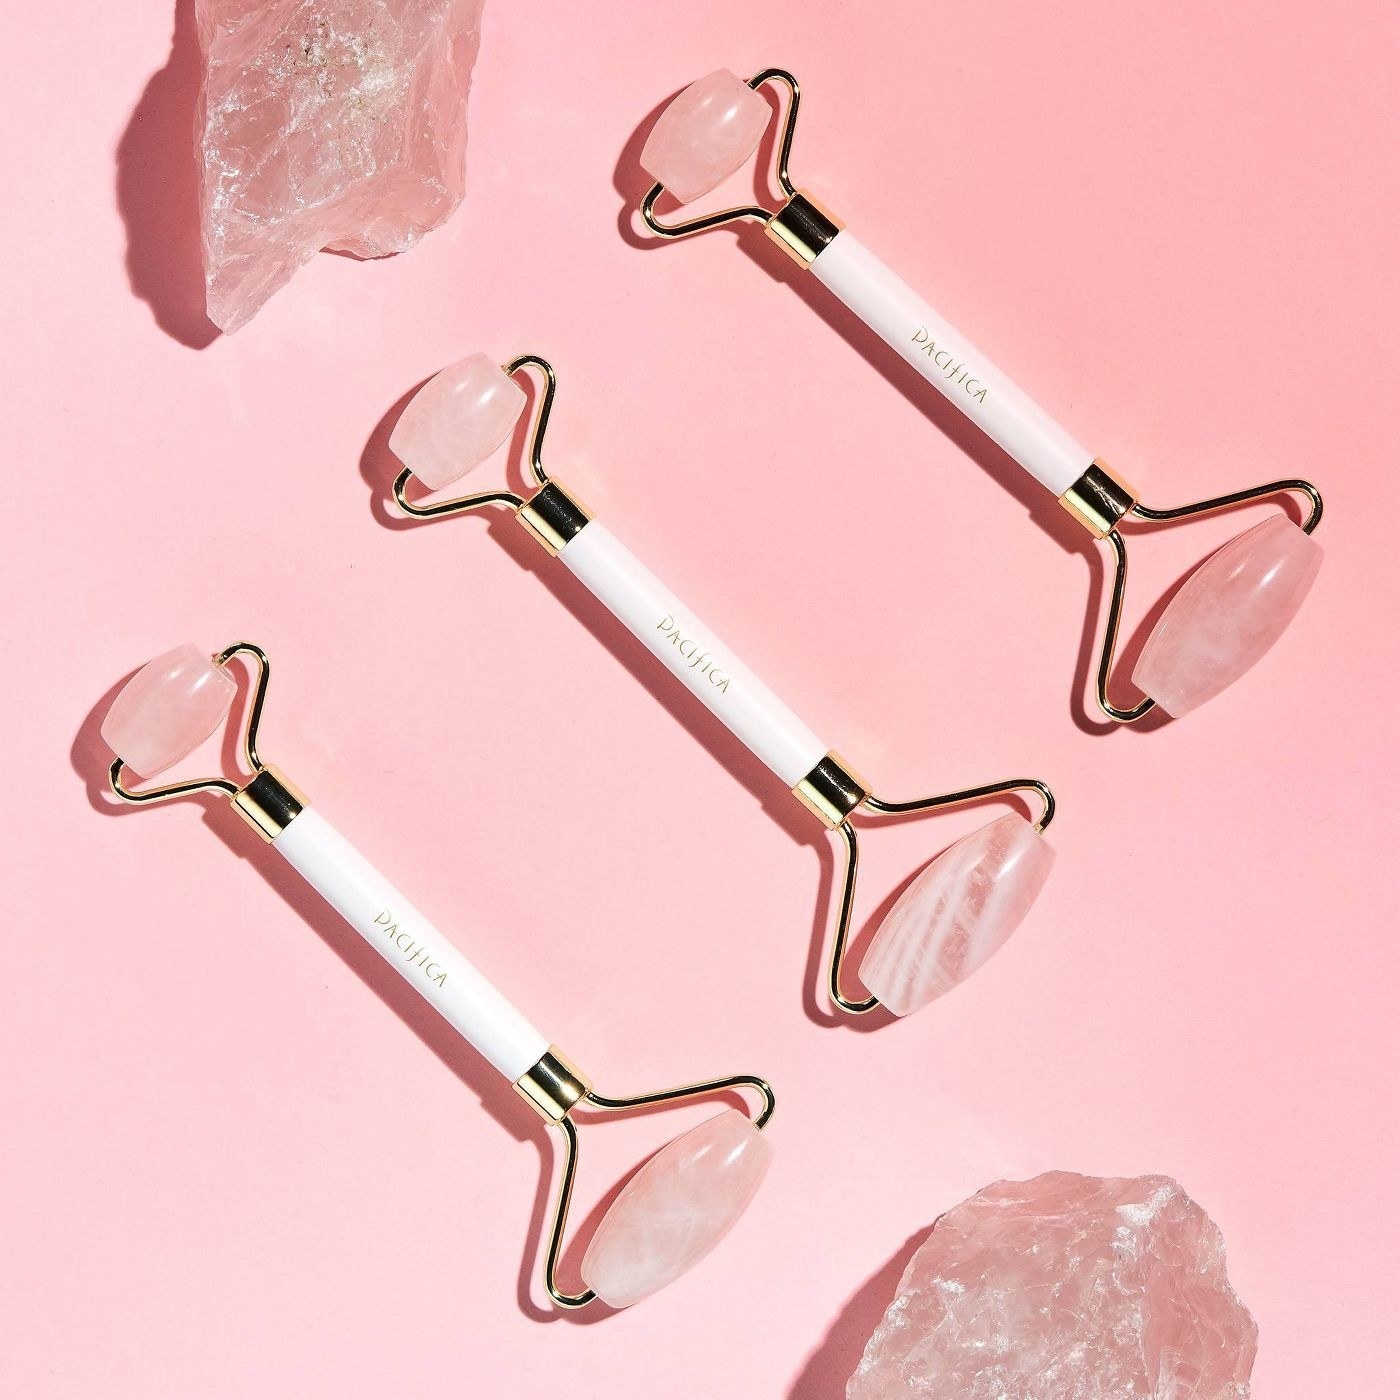 A row of three rose quartz facial rollers